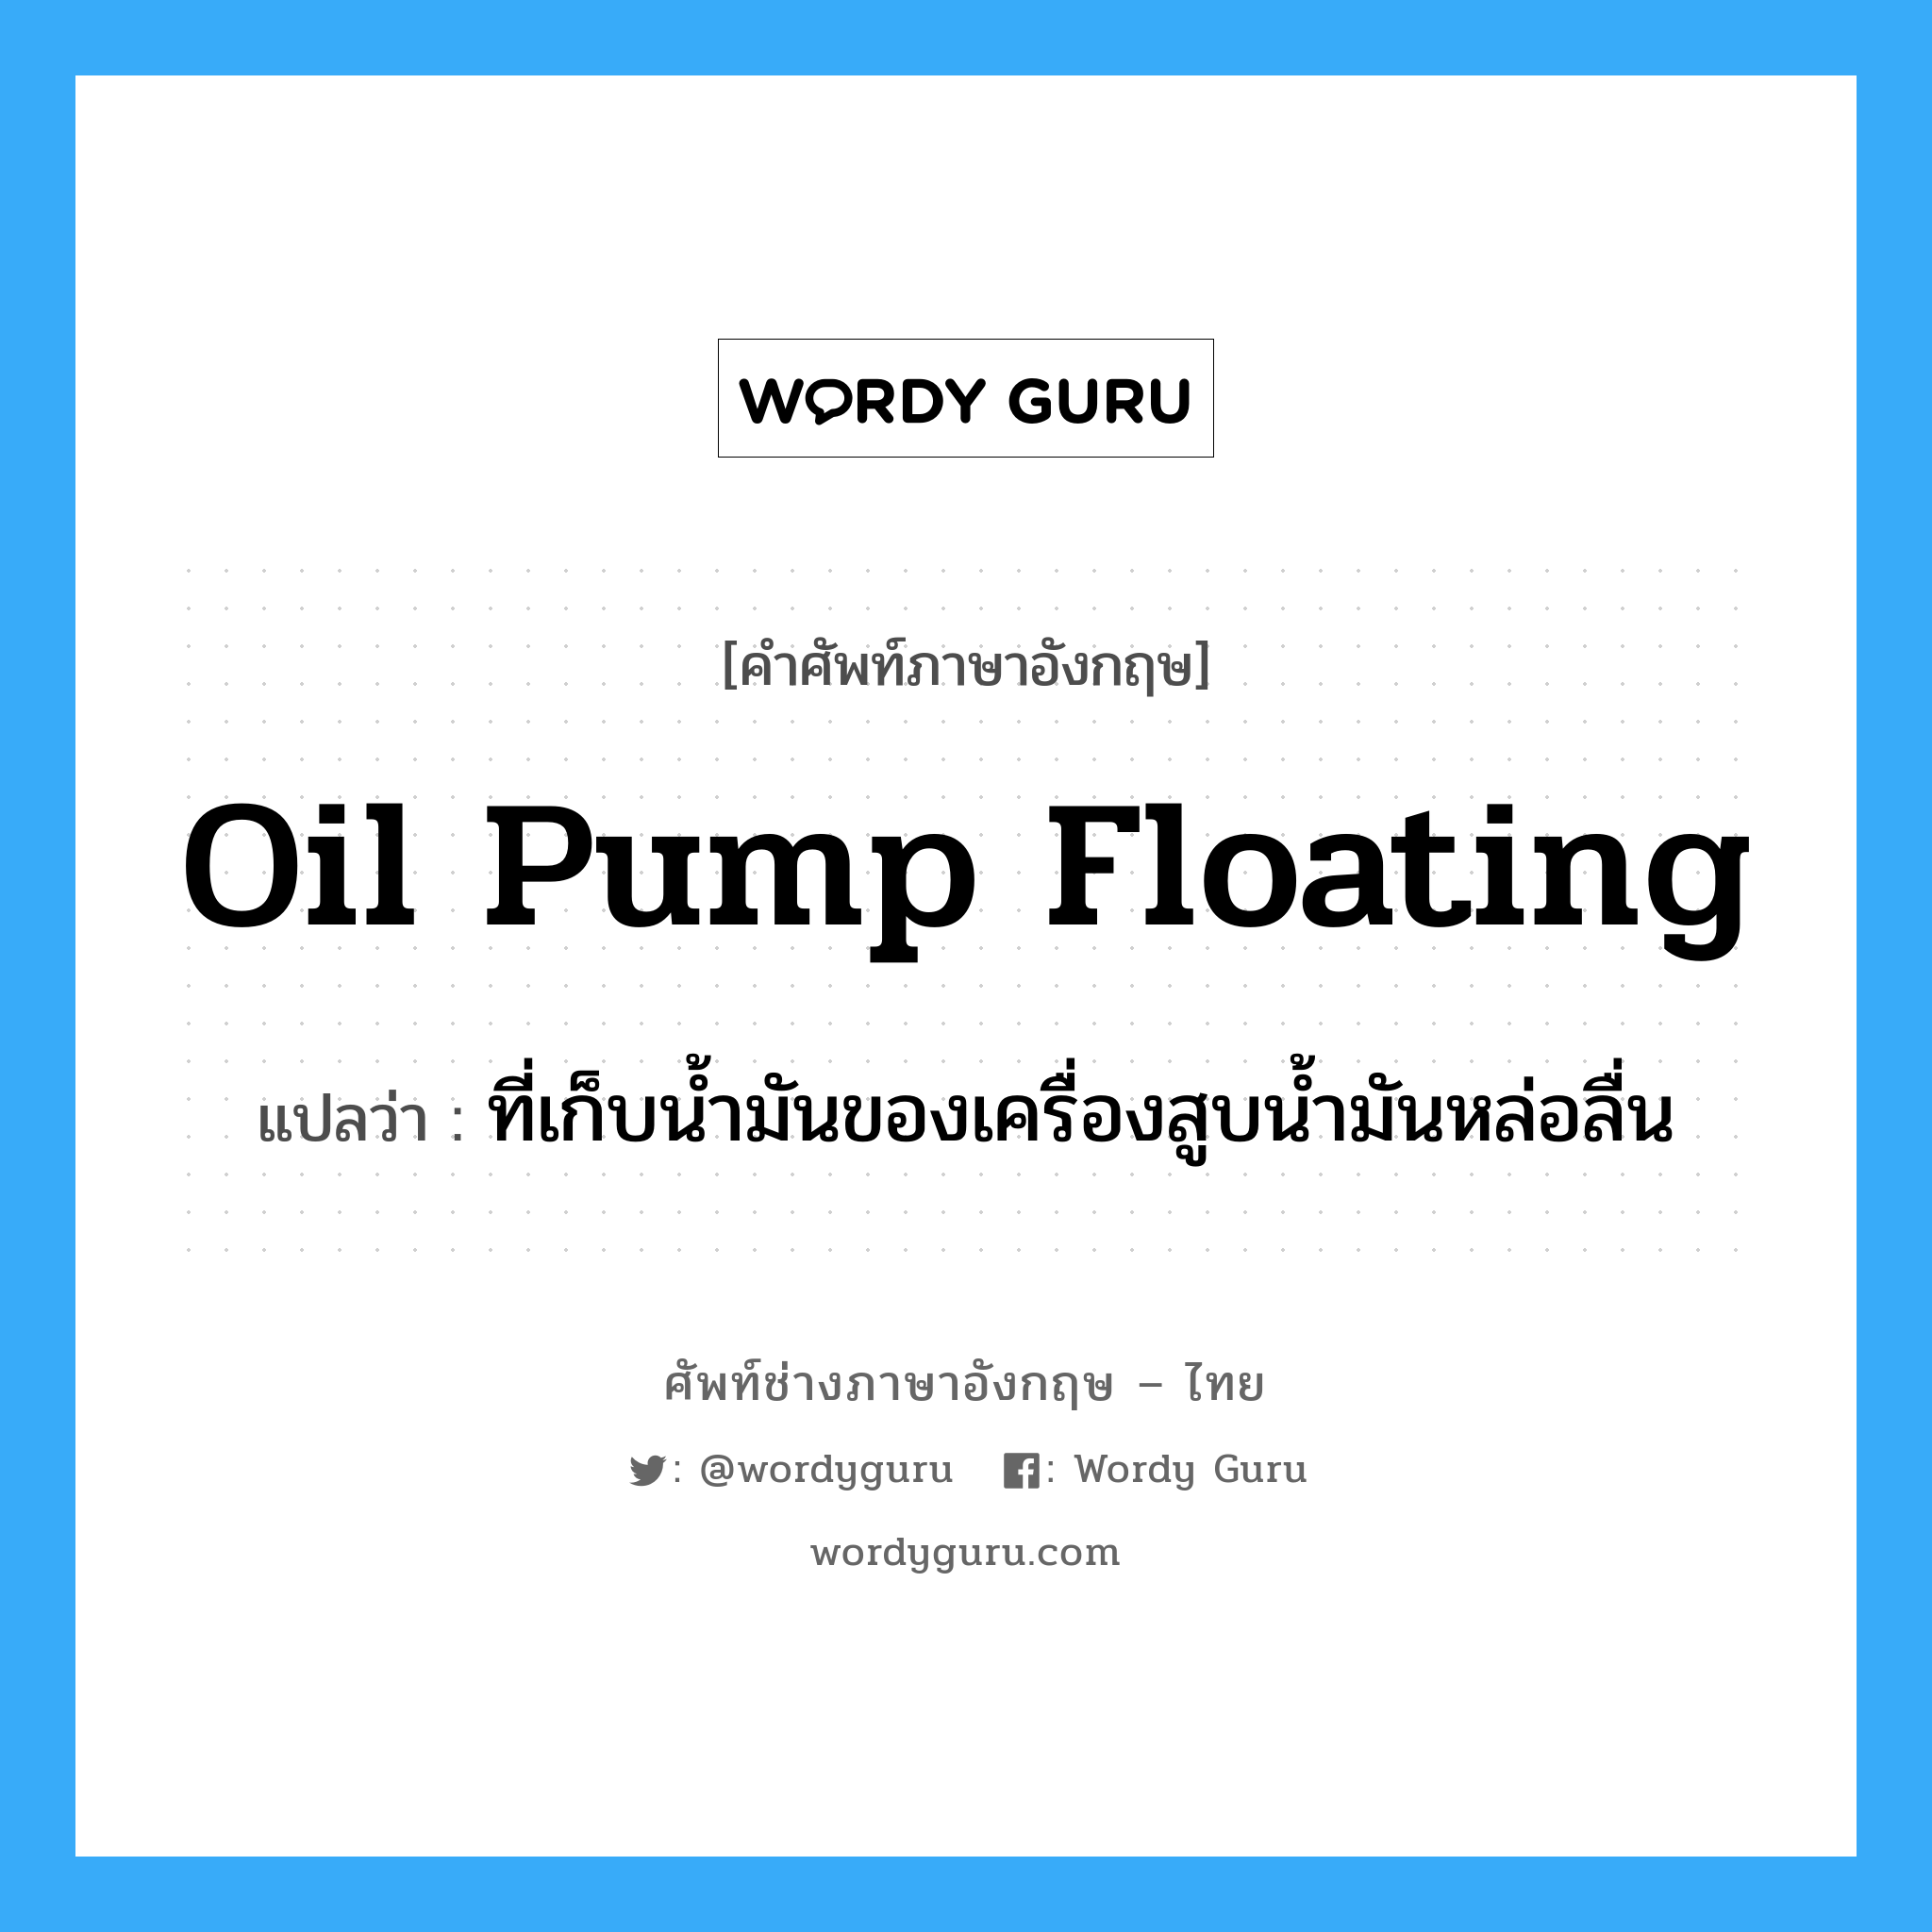 oil pump floating แปลว่า?, คำศัพท์ช่างภาษาอังกฤษ - ไทย oil pump floating คำศัพท์ภาษาอังกฤษ oil pump floating แปลว่า ที่เก็บน้ำมันของเครื่องสูบน้ำมันหล่อลื่น